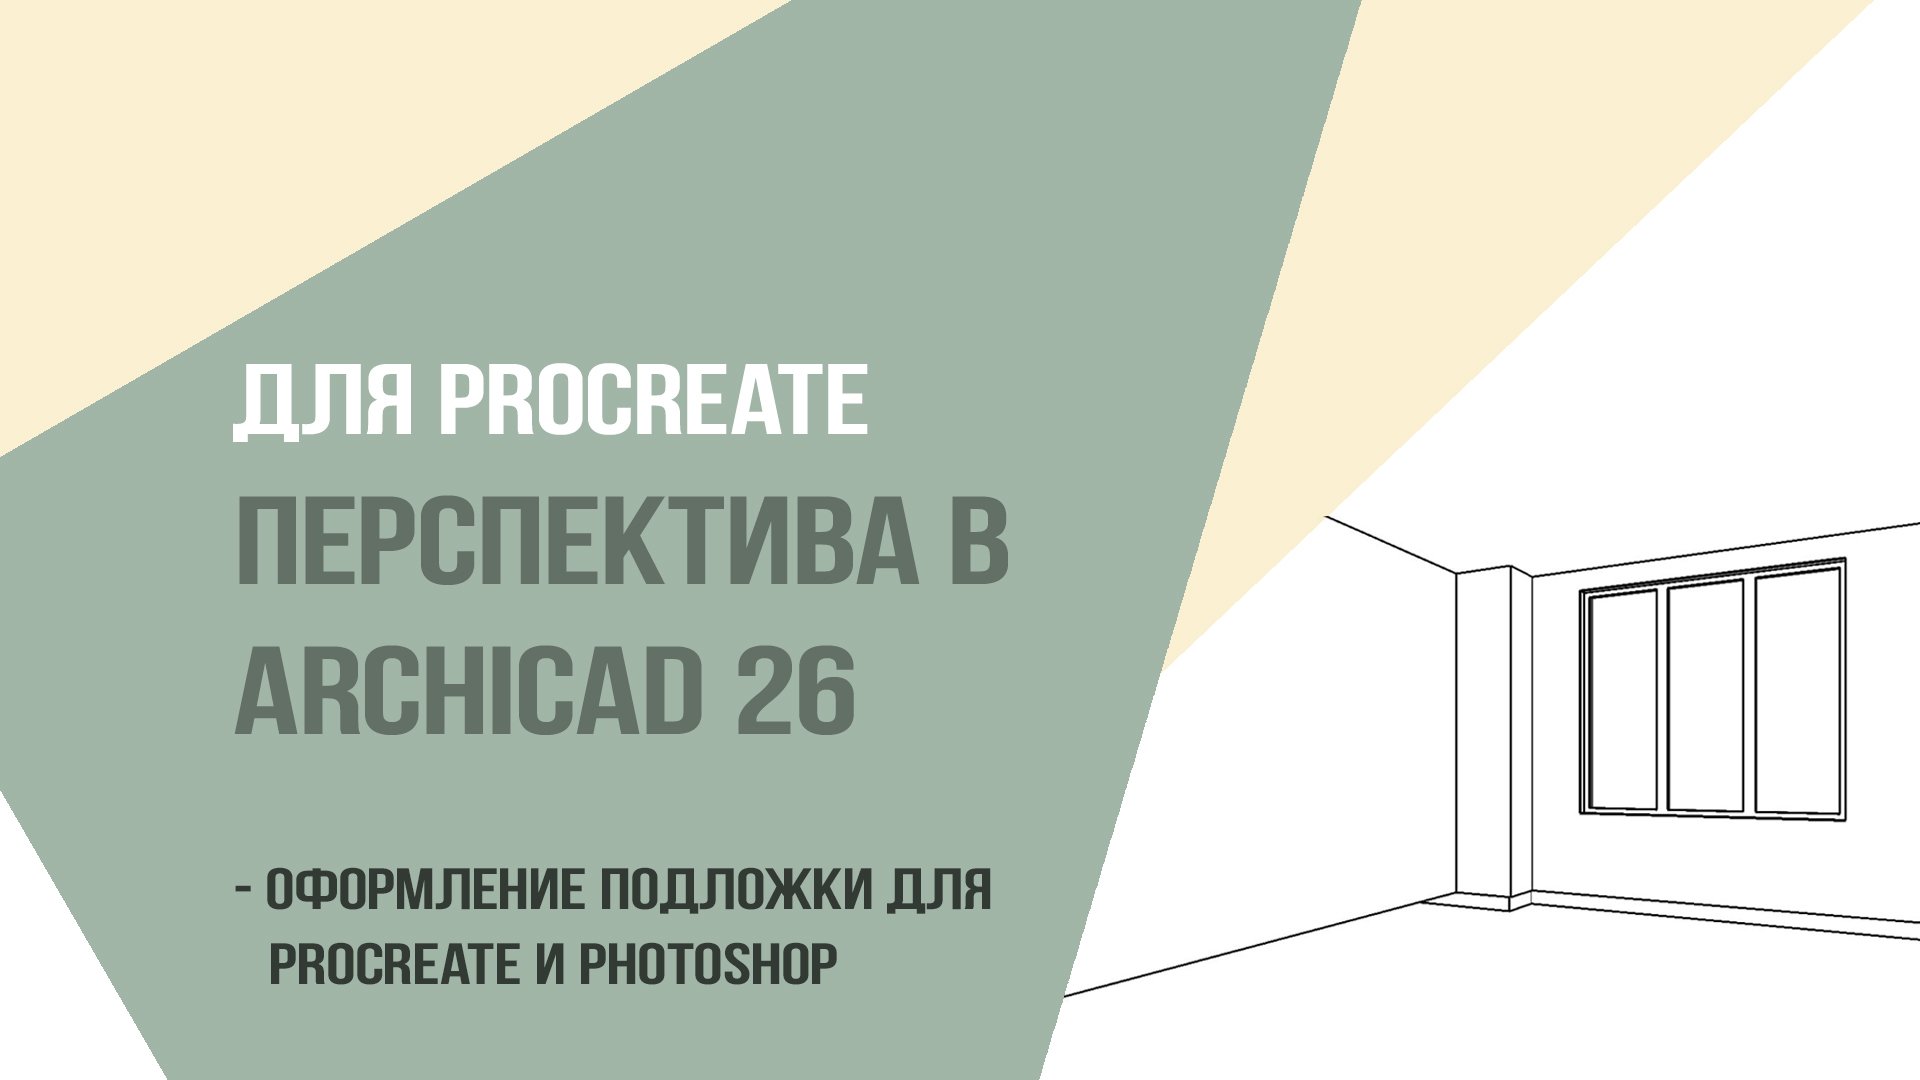 Для Procreate перспектива в Аrchicad 26. Оформление подложки для procreate и photoshop.